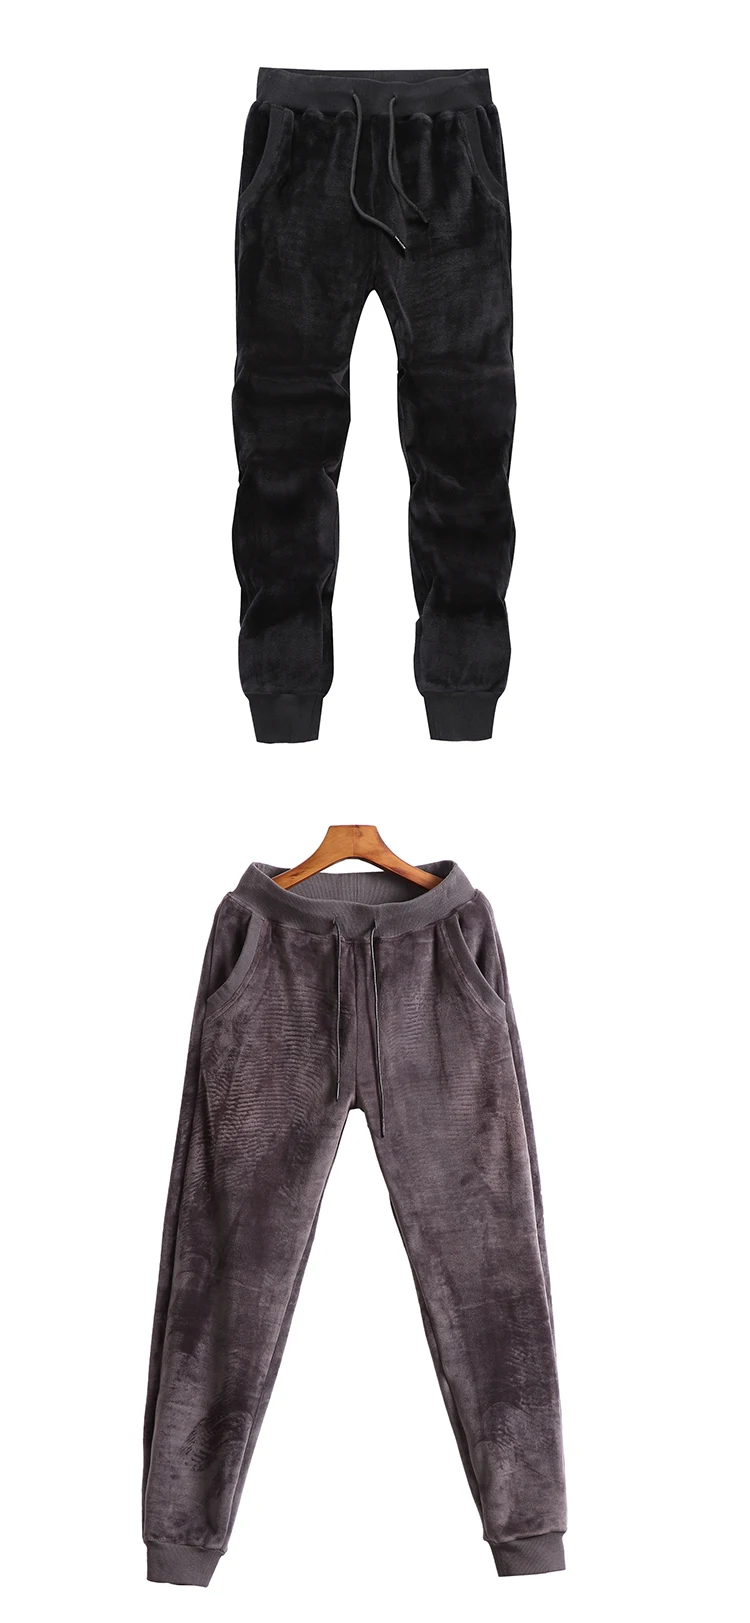 Мужские зимние теплые штаны для бега, мужские бархатные спортивные штаны, мужские плотные брюки средней плотности из полиэстера, S-3XL